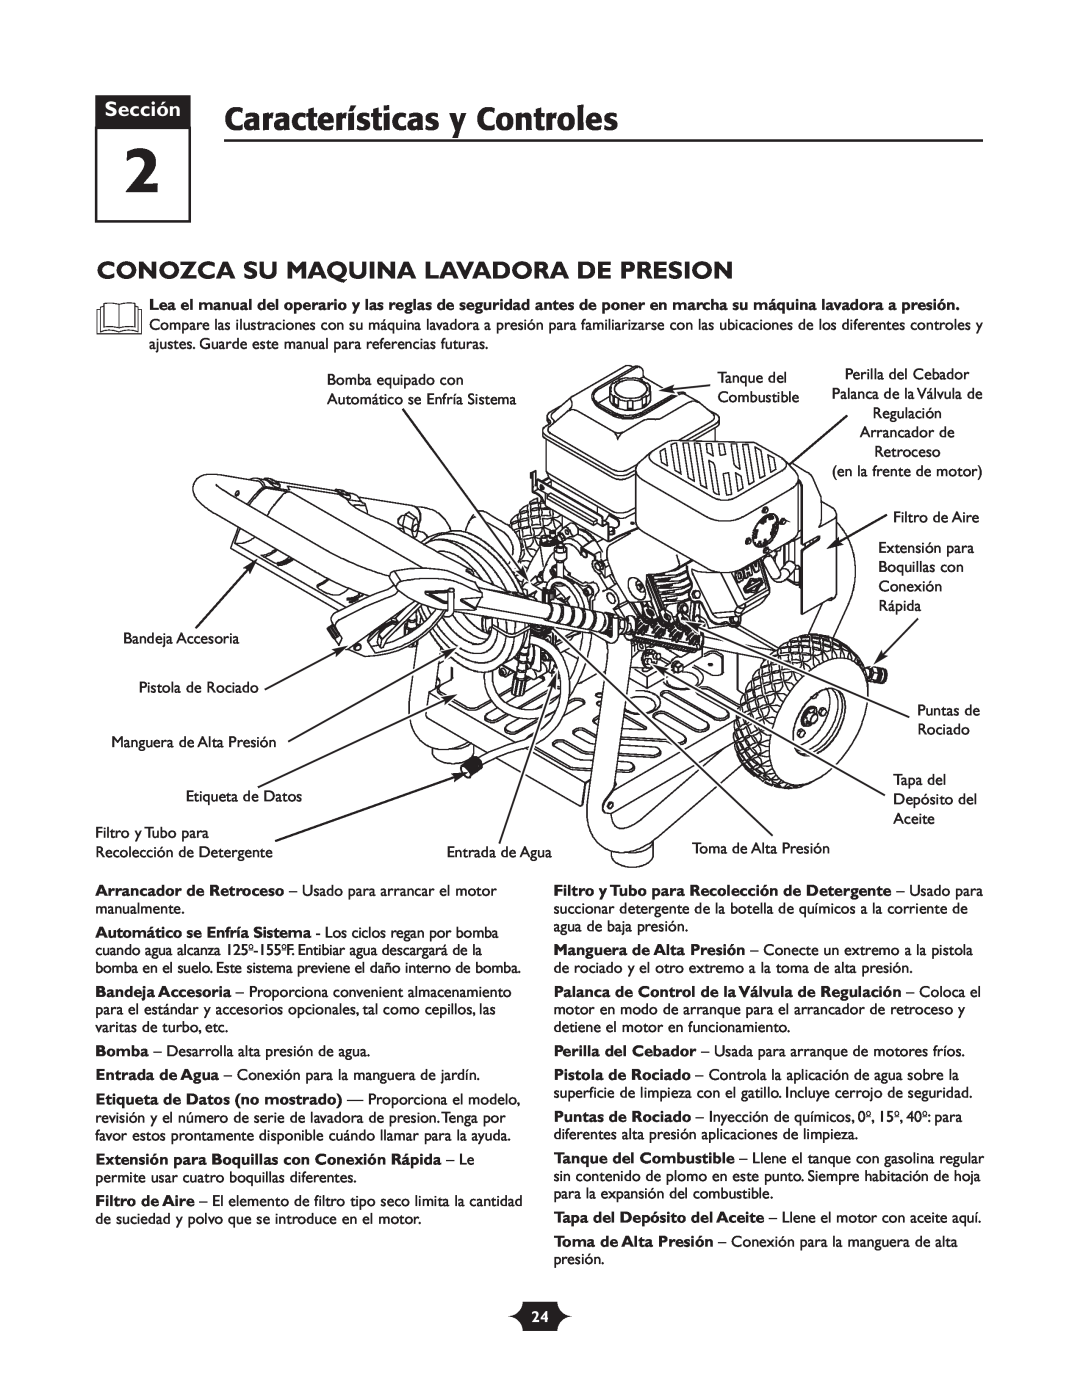 Troy-Bilt 020242-4 manual Características y Controles, Conozca Su Maquina Lavadora De Presion, Sección 